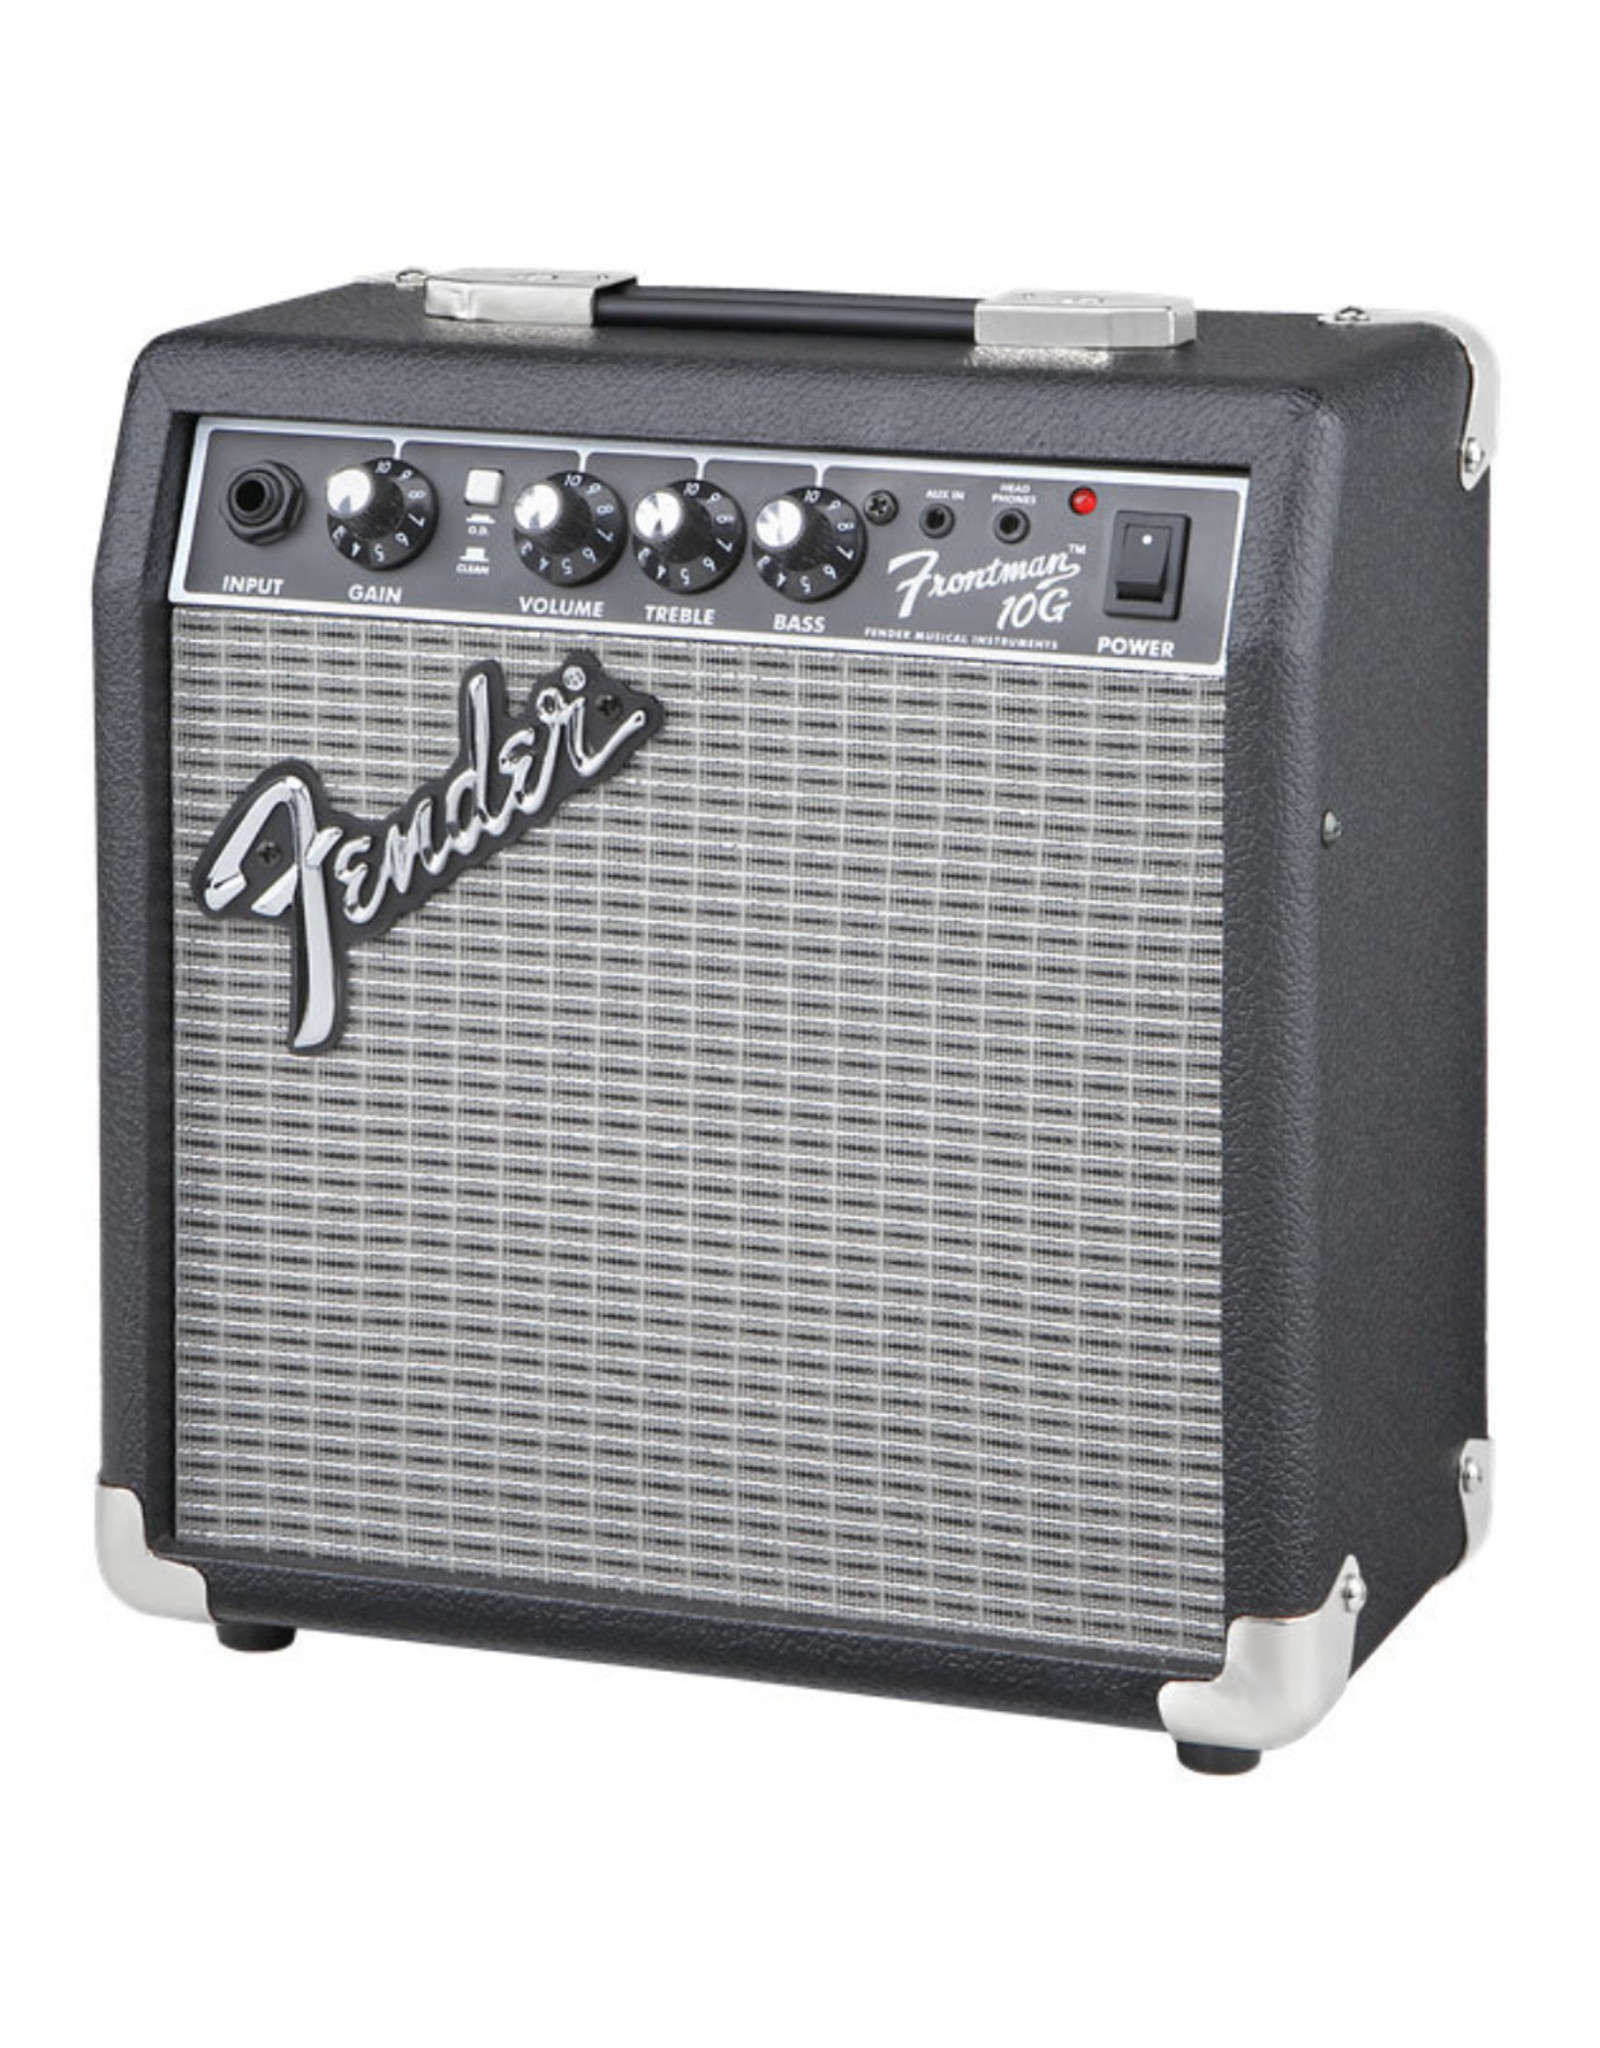 Fender Fender Frontman 10G Guitar Amplifier (2311000000)